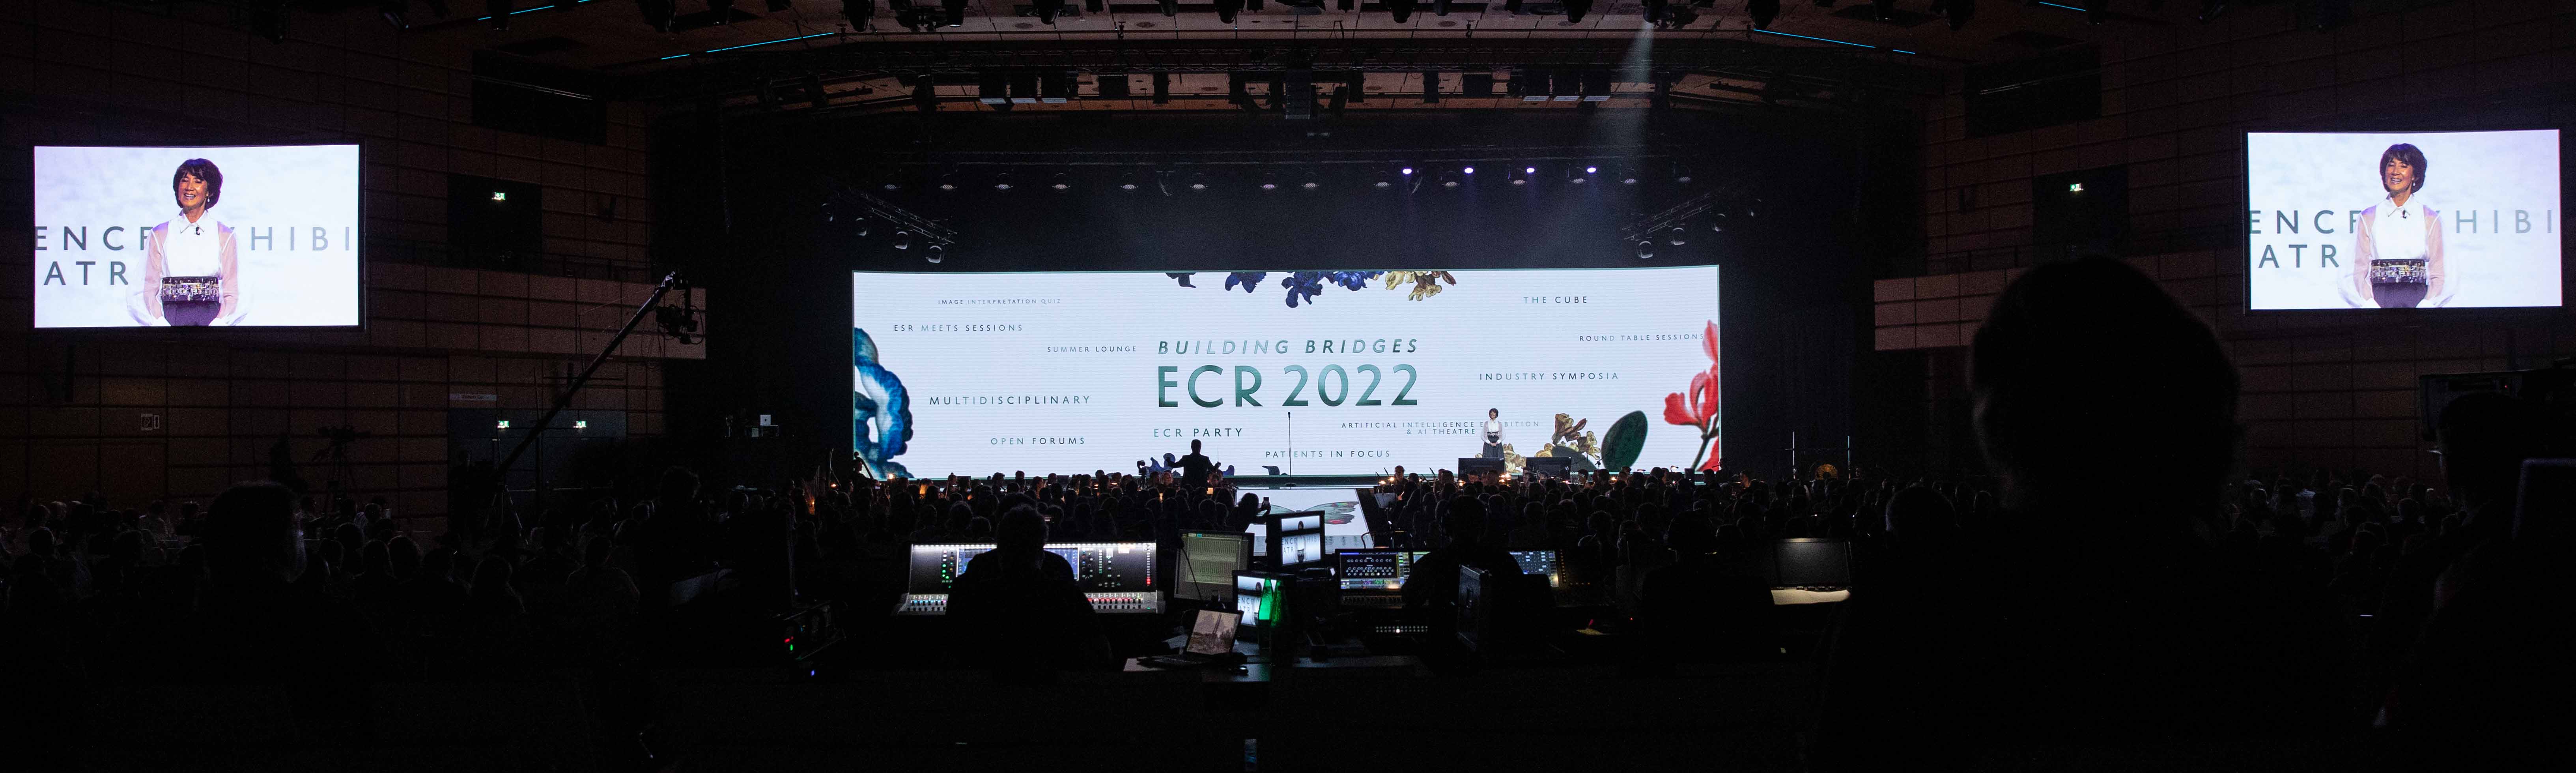 ECR 2022